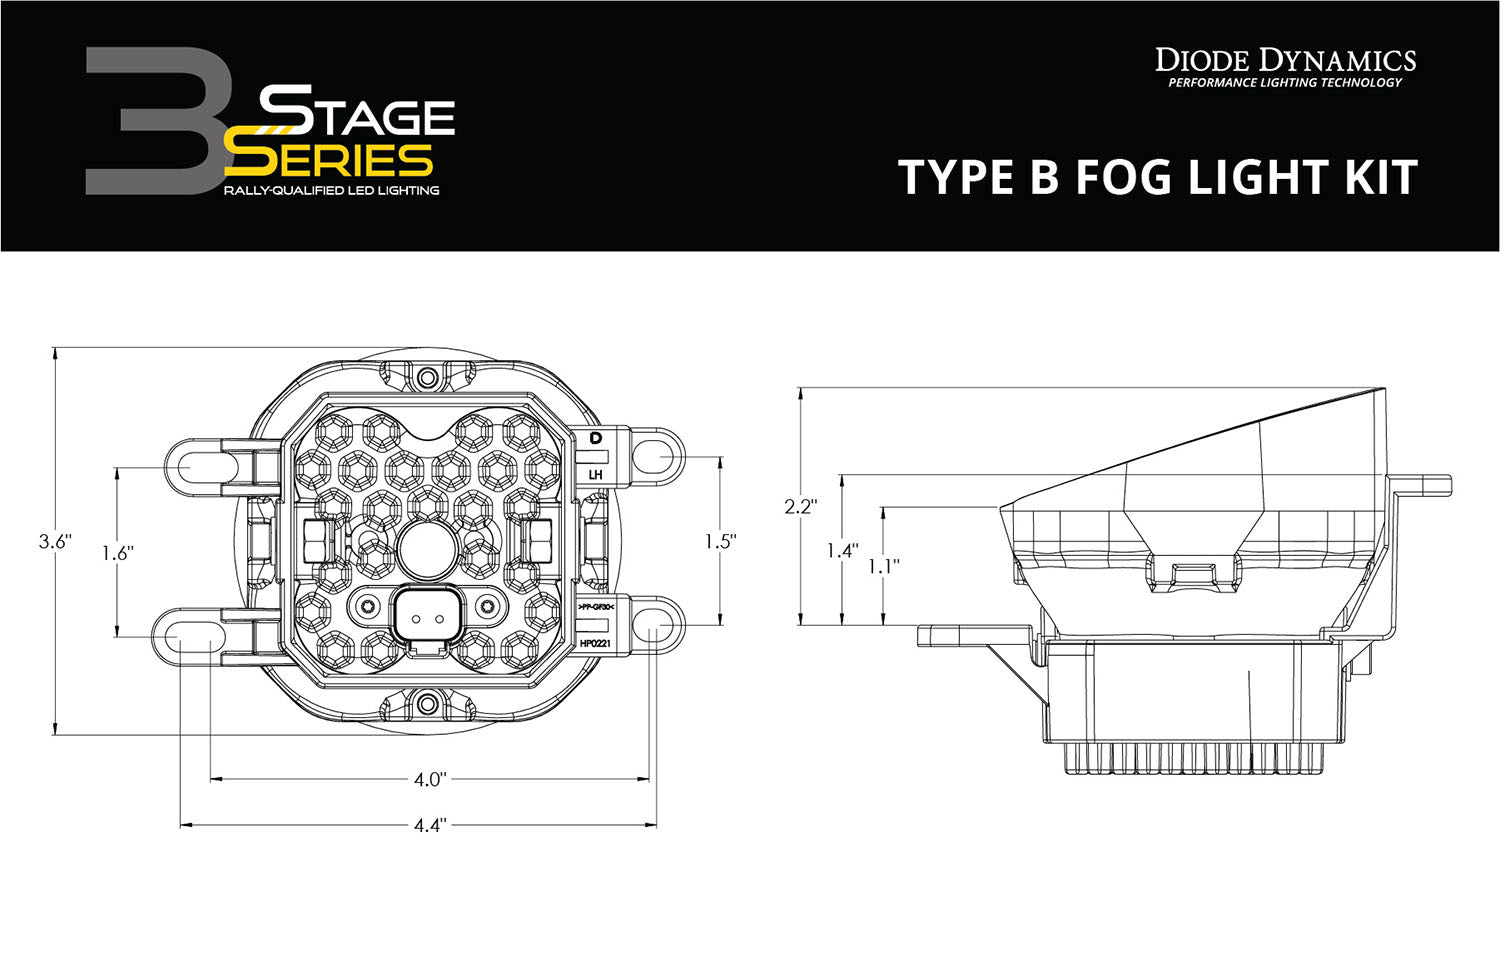 SS3 LED Fog Light Kit for 2011-2013 Lexus IS250 Yellow SAE Fog Sport Diode Dynamics